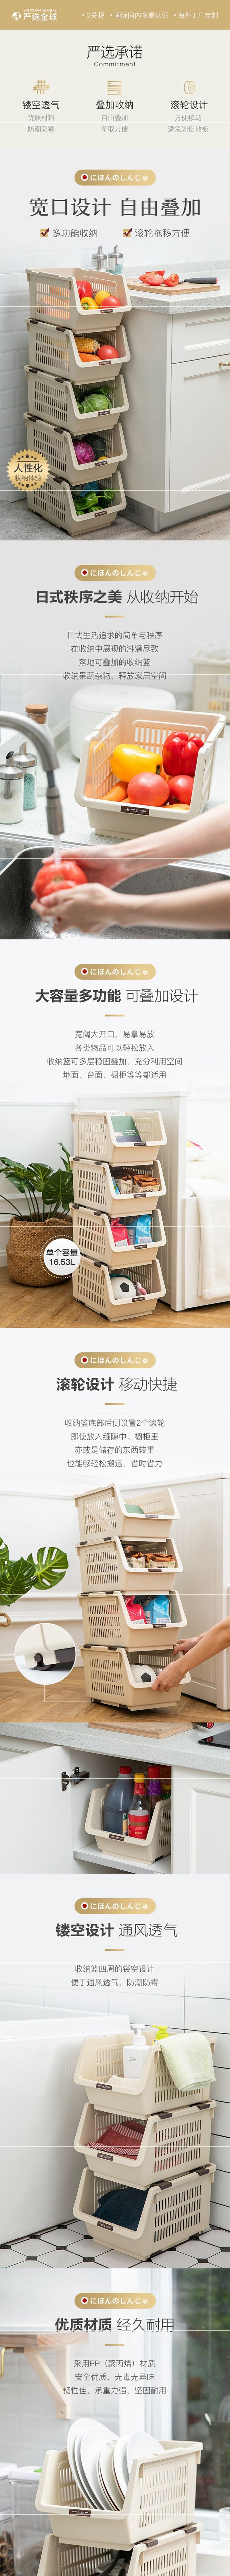 Lifease Made in Japanstackable multi-purpose storage basket orange -2 pcs